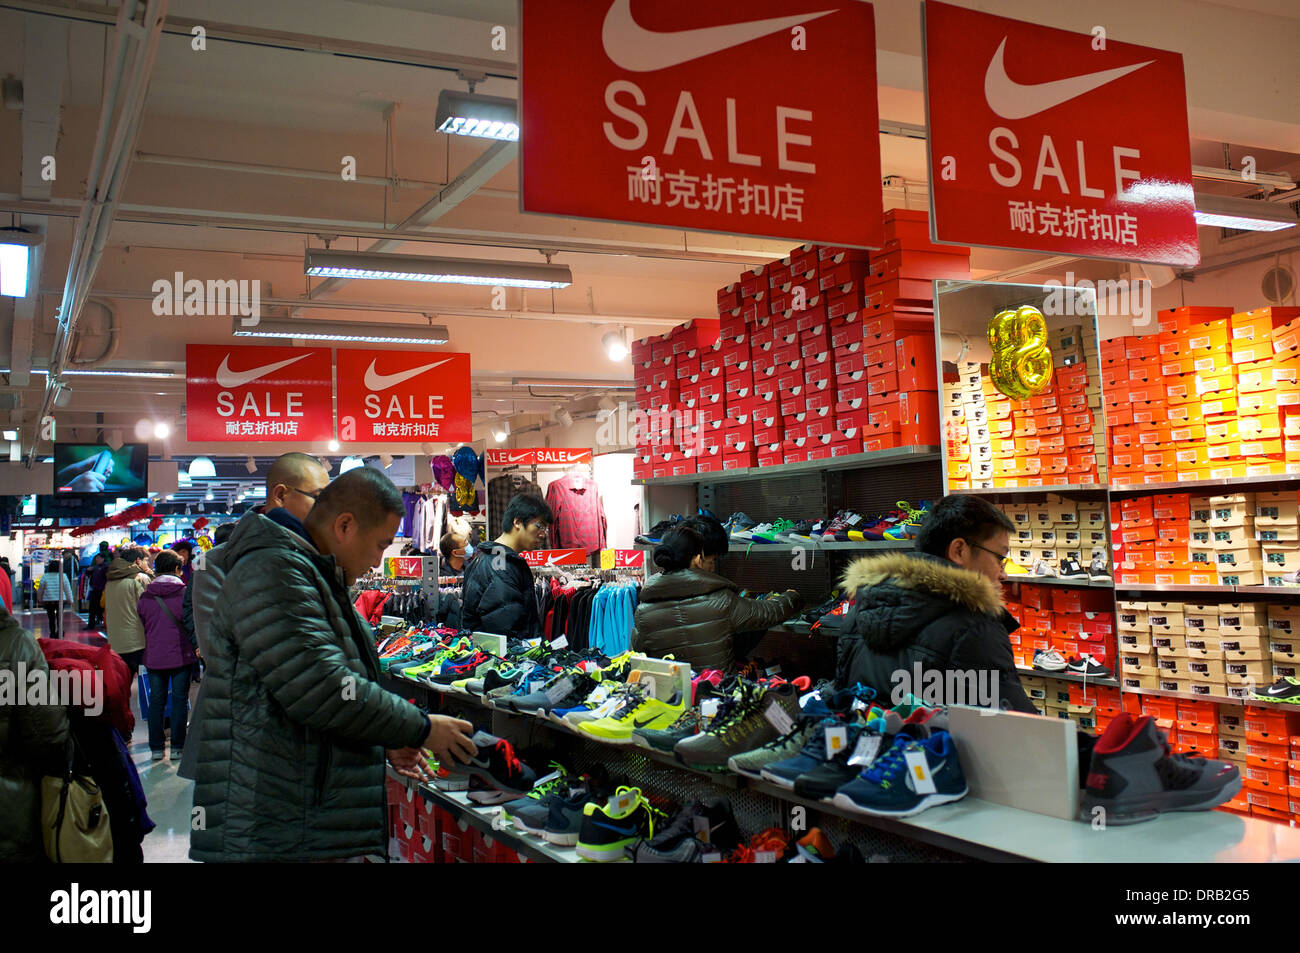 Nike store china e imágenes de alta resolución - Alamy